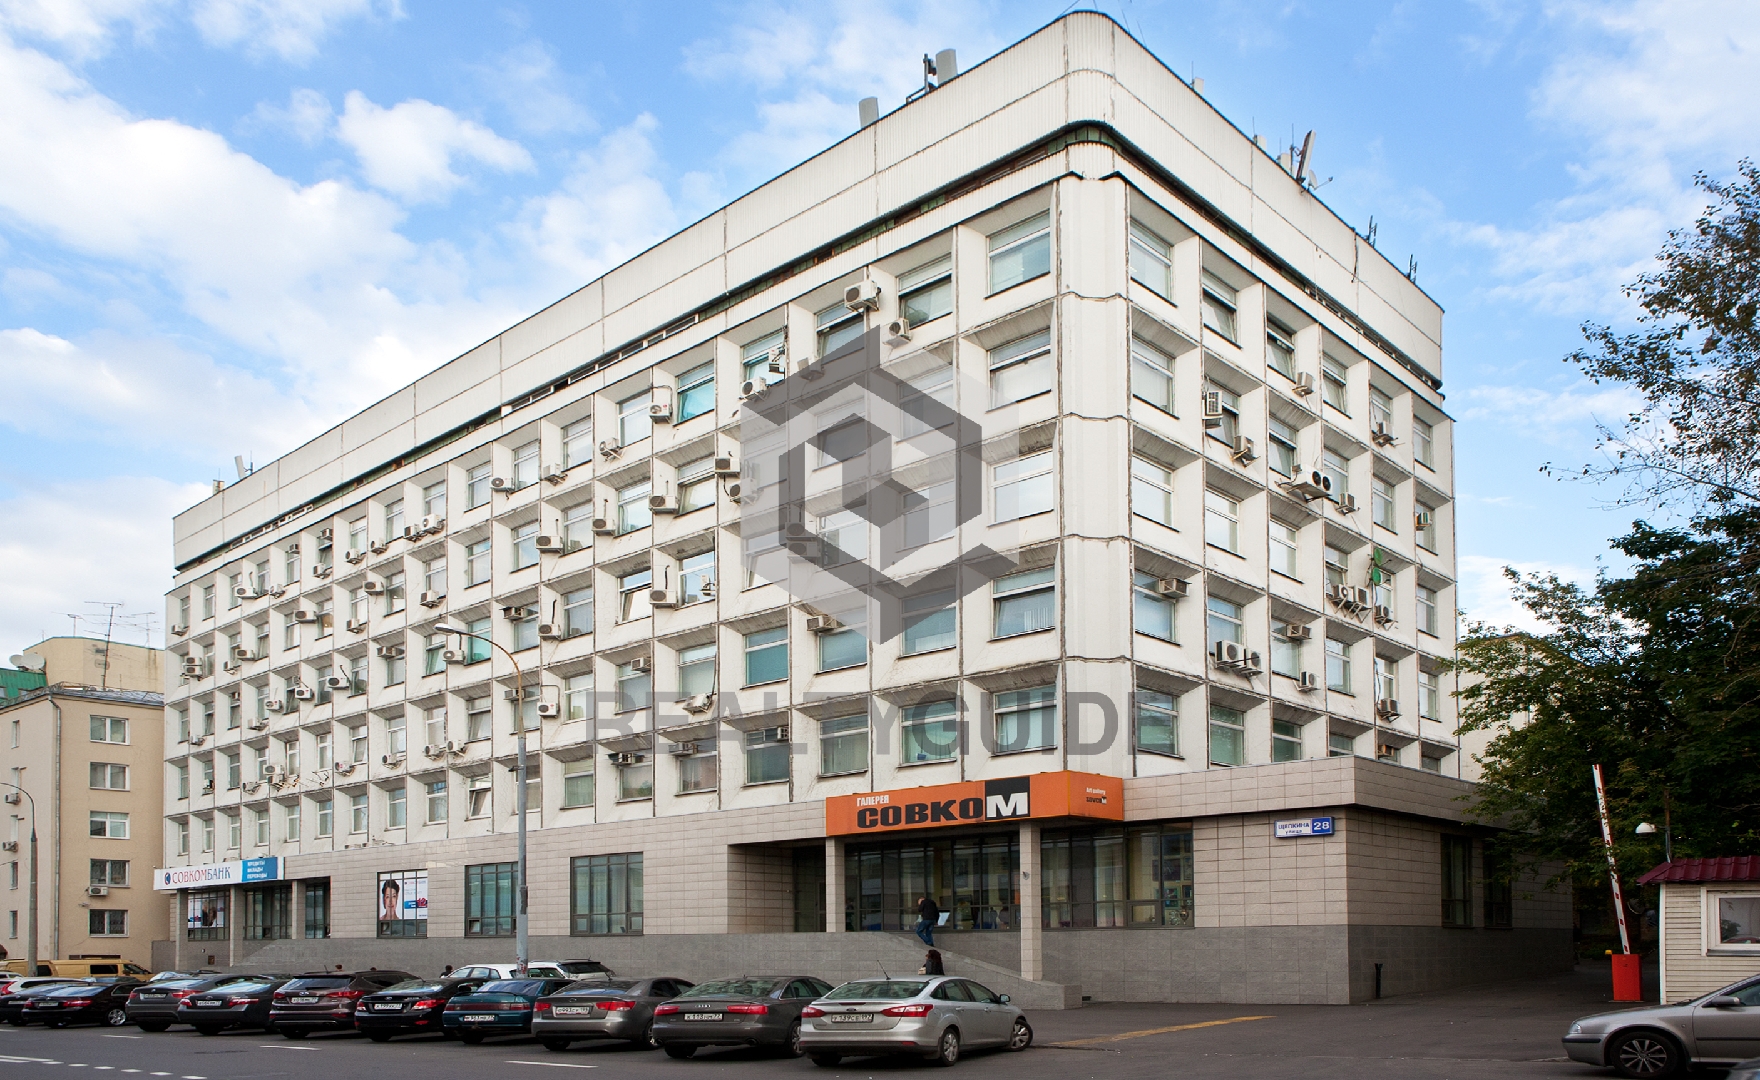 Административное здание Щепкина, 28